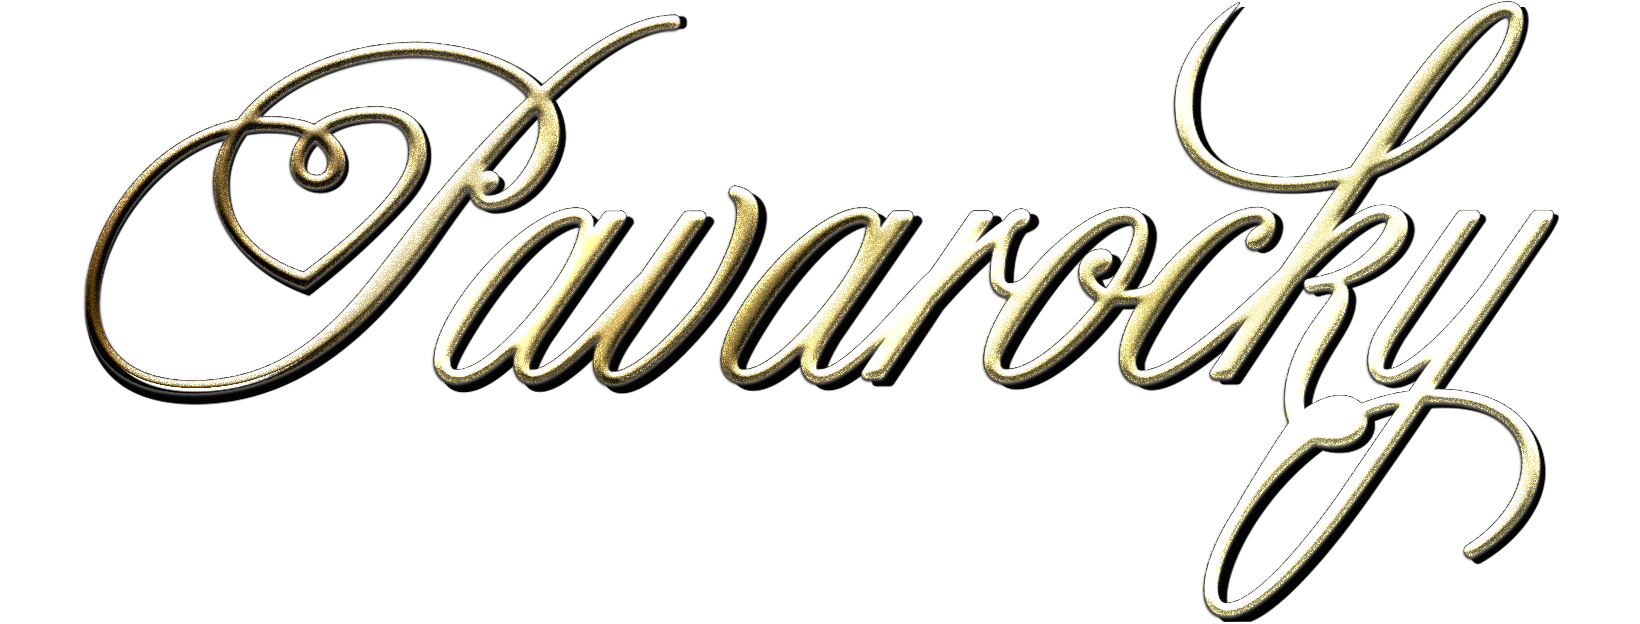 Logo von Tenor Pavarocky in geschwungener Goldschrift. Das P bilden ein Herz-Symbol